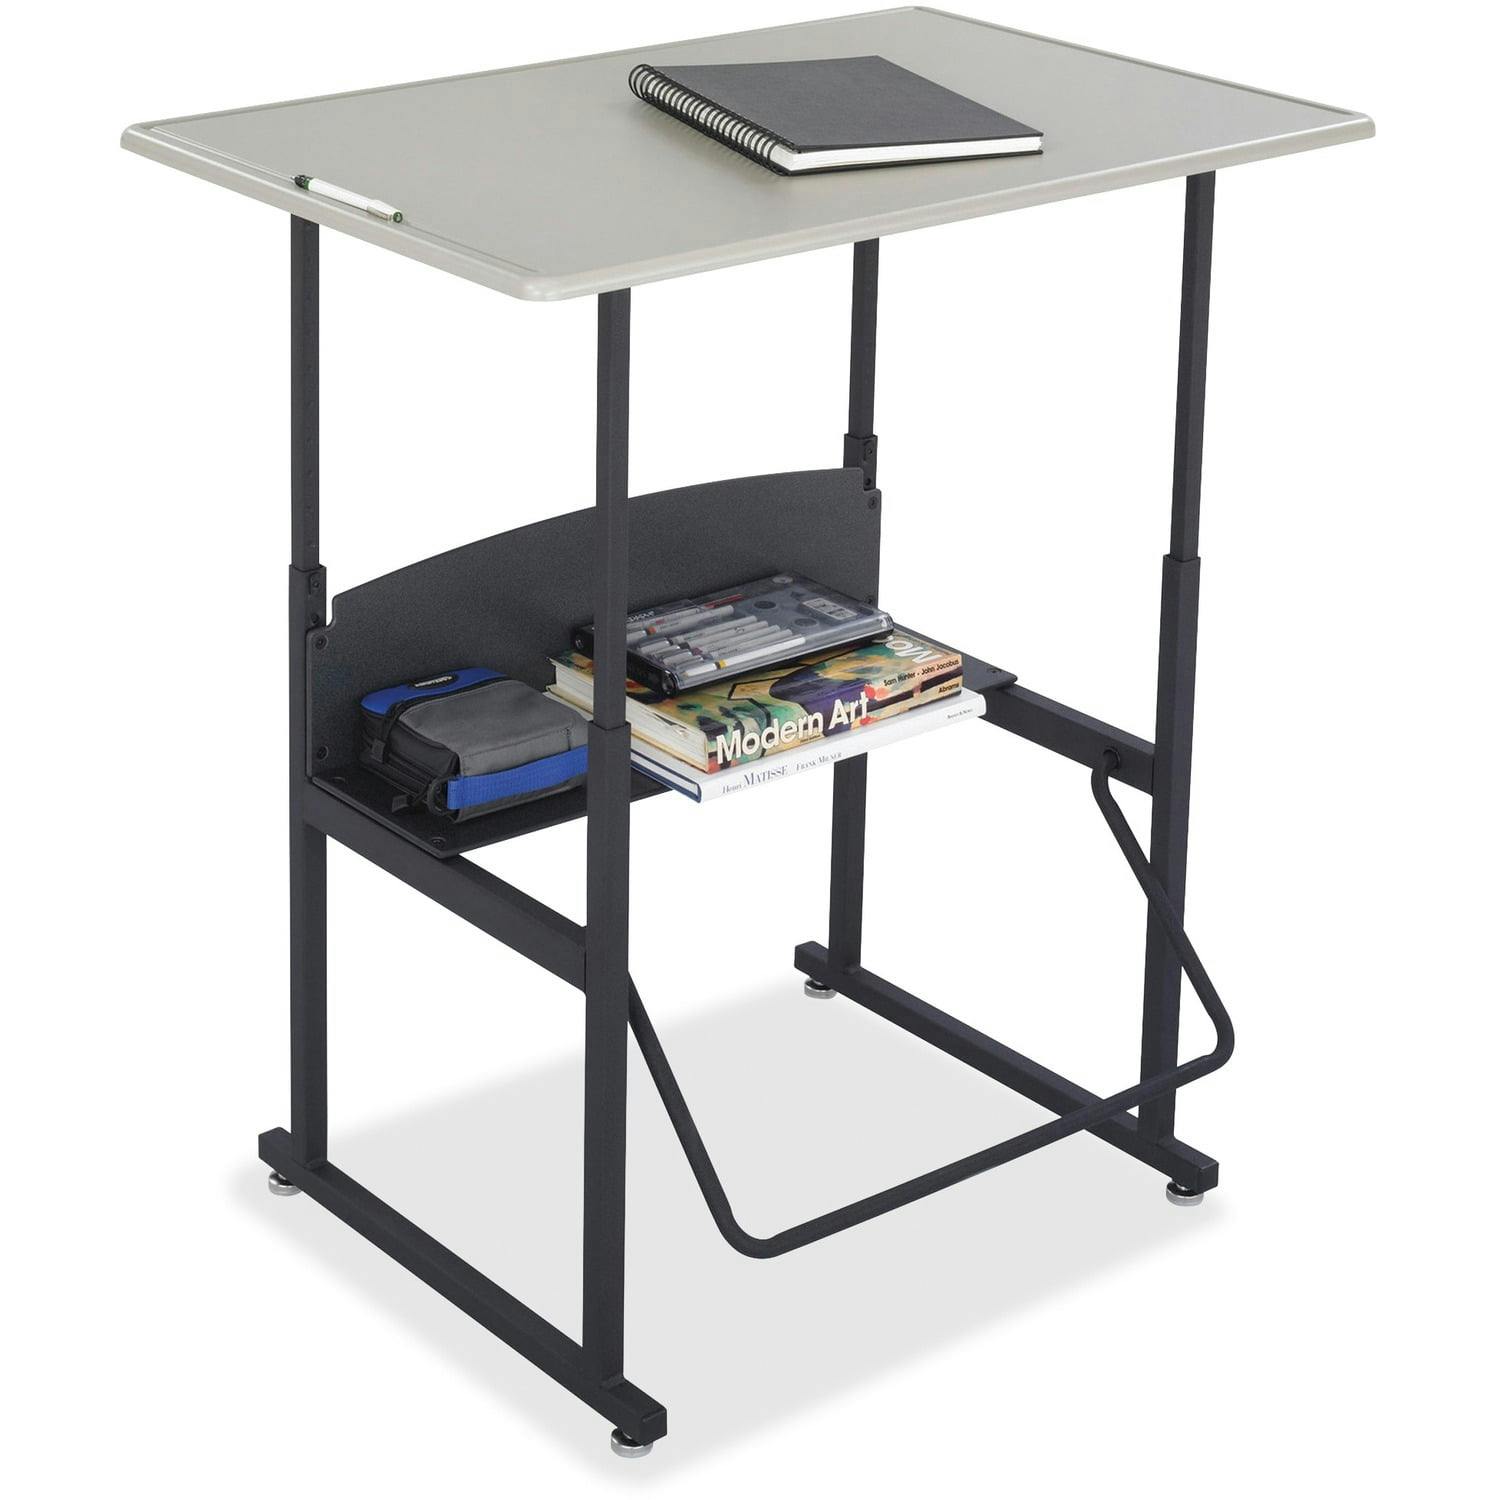 ErgoActive Black Steel Adjustable Height Standing Desk with Pendulum Footrest